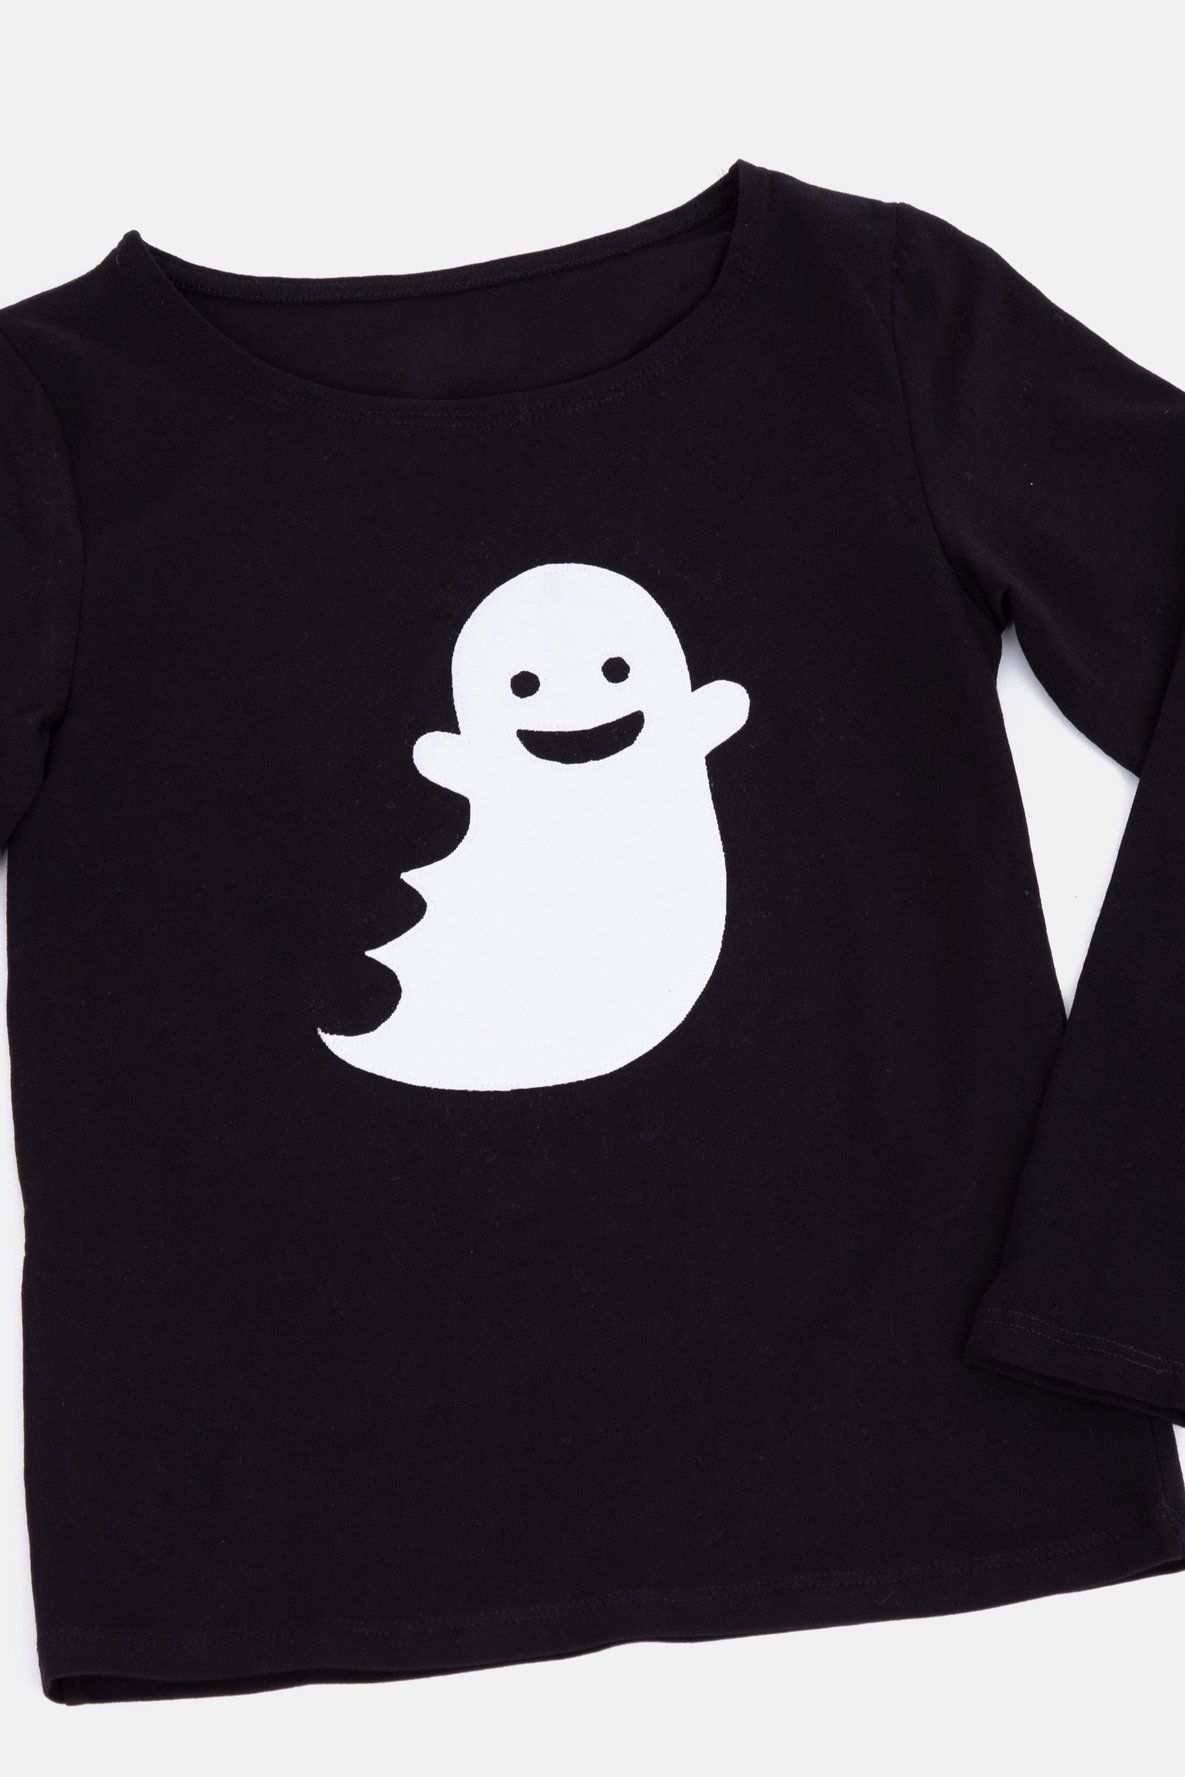 Vorlage Fur Hubsche Halloween Applikationen Geist Auf Shirt